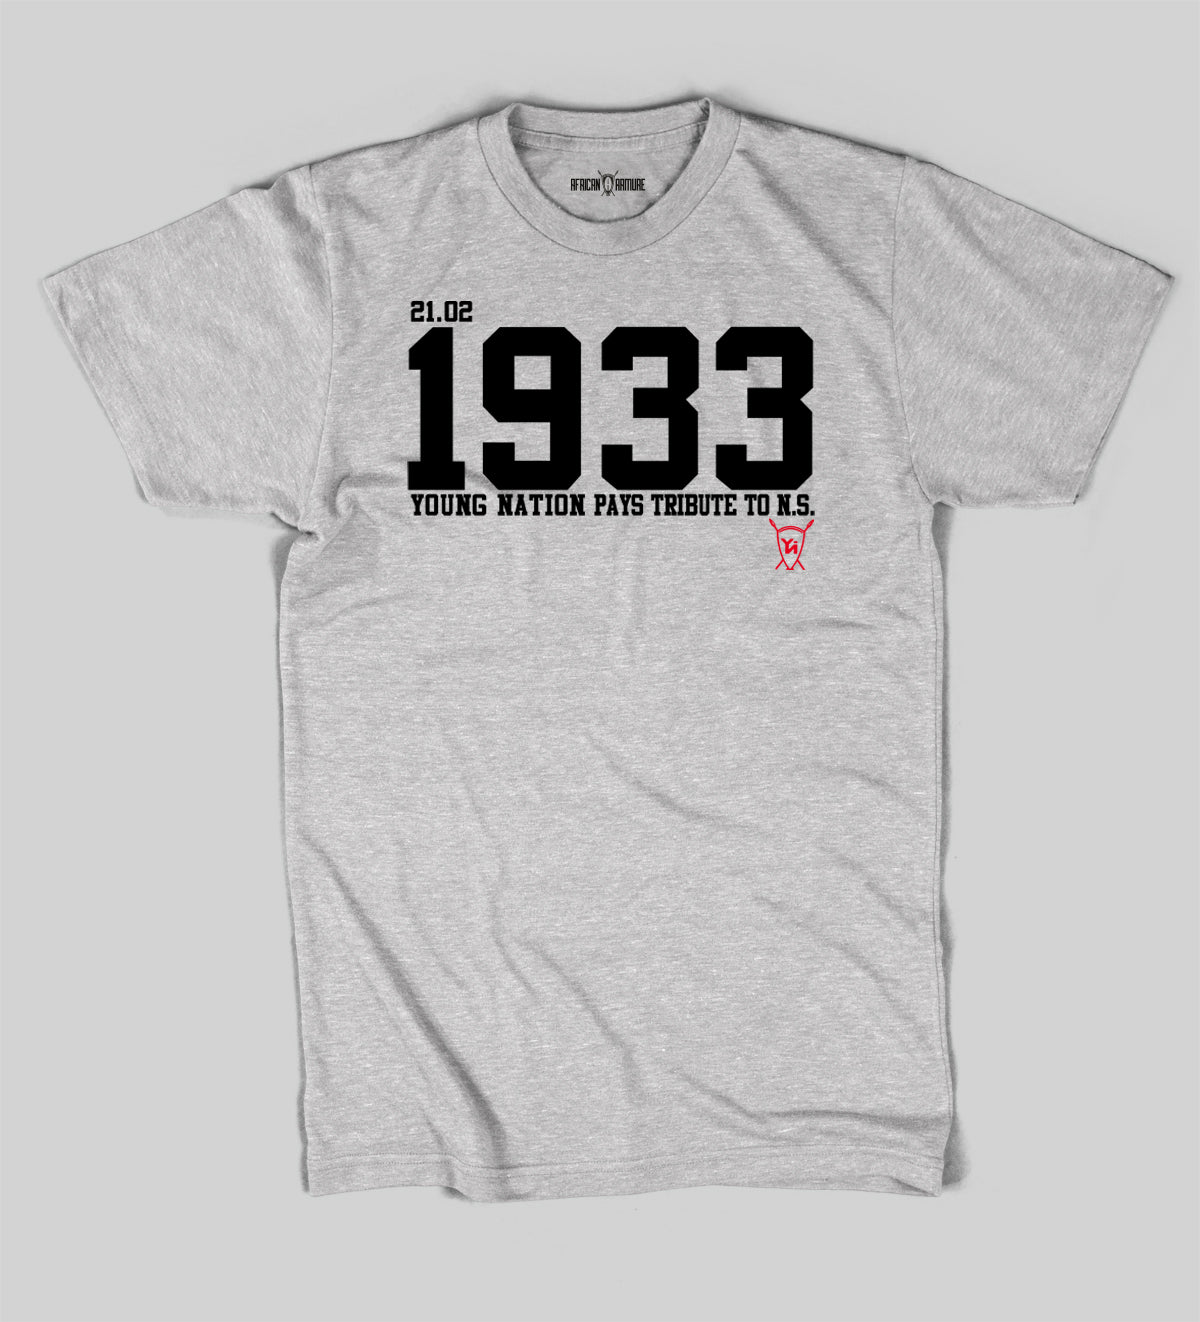 T-shirt TRIBUTE TO 1933 Nina Simone